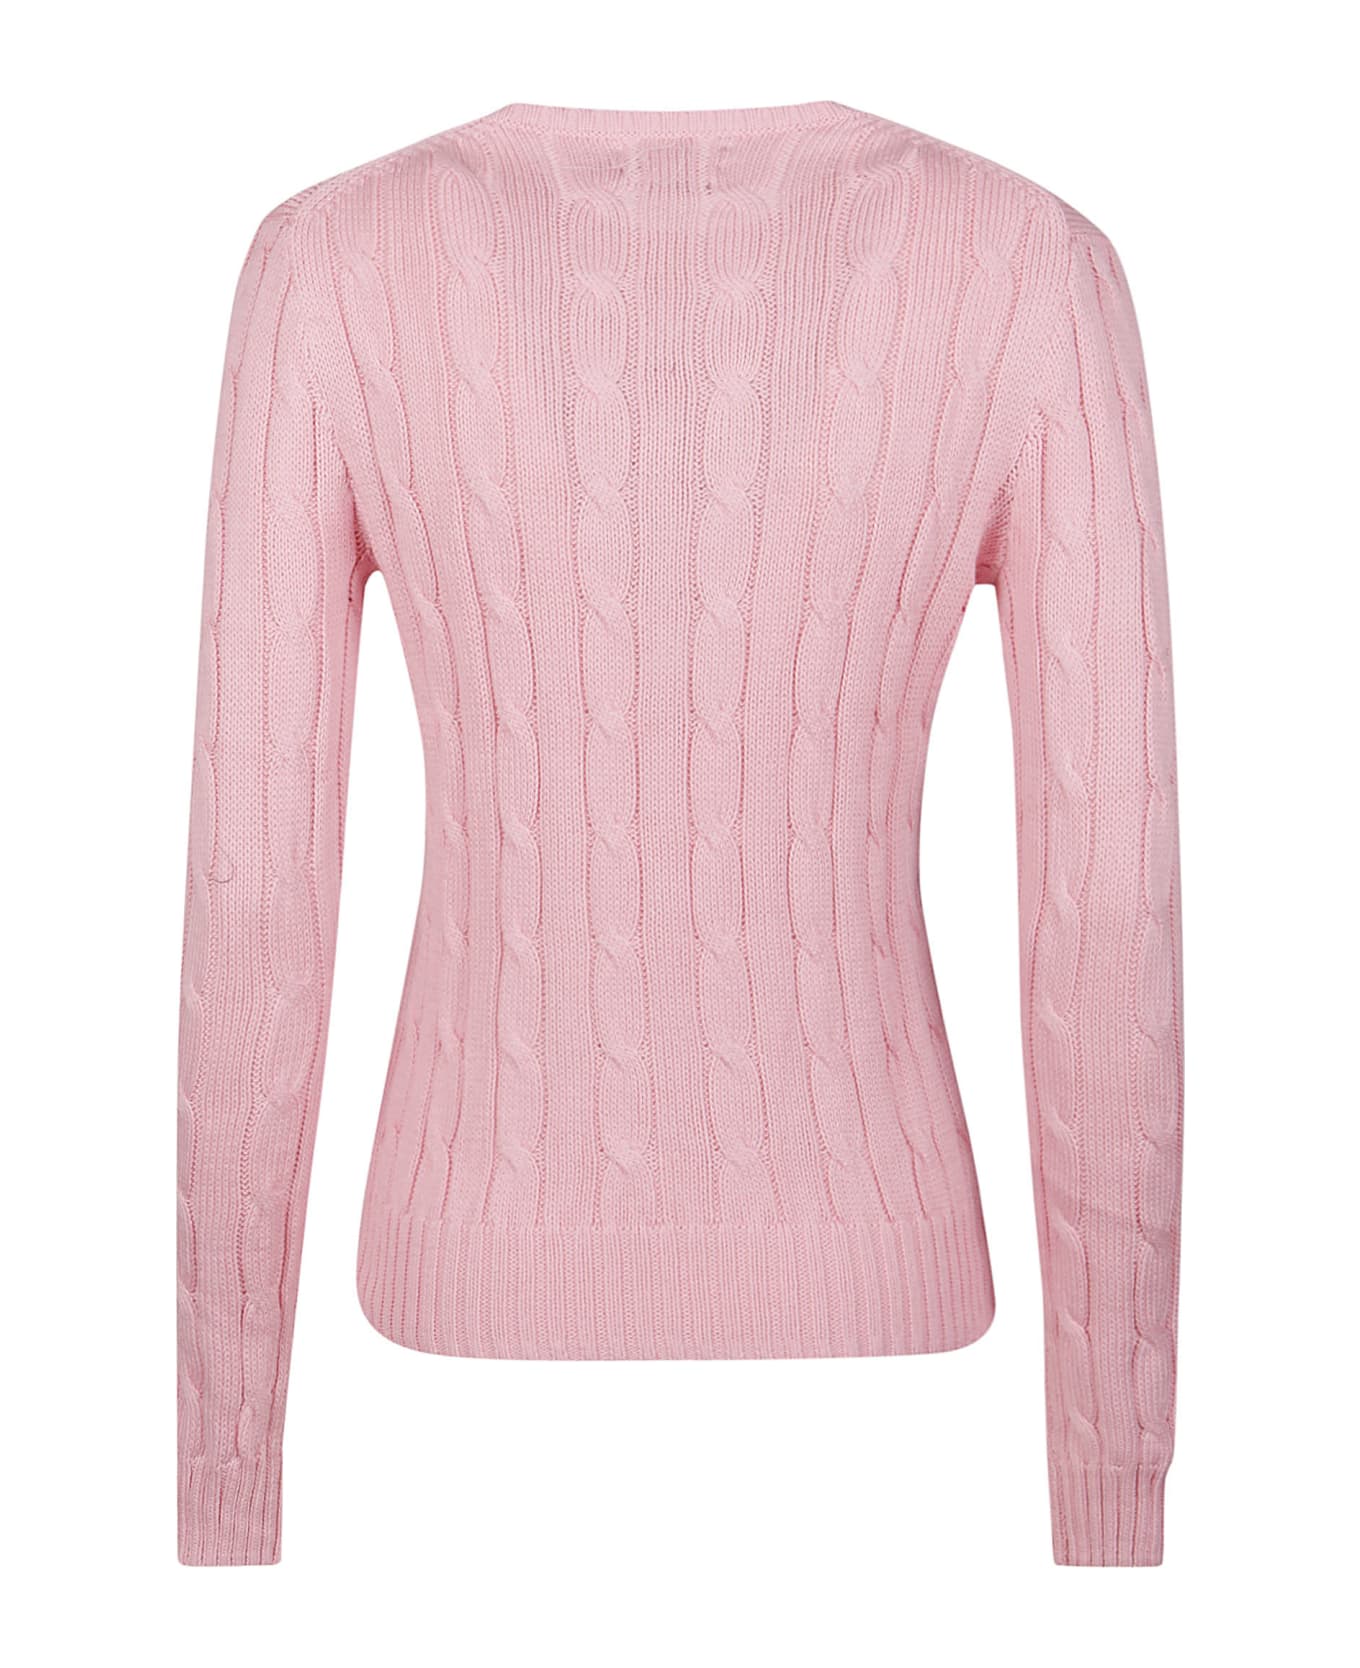 Polo Ralph Lauren Julianna Sweater - Carmel Pink